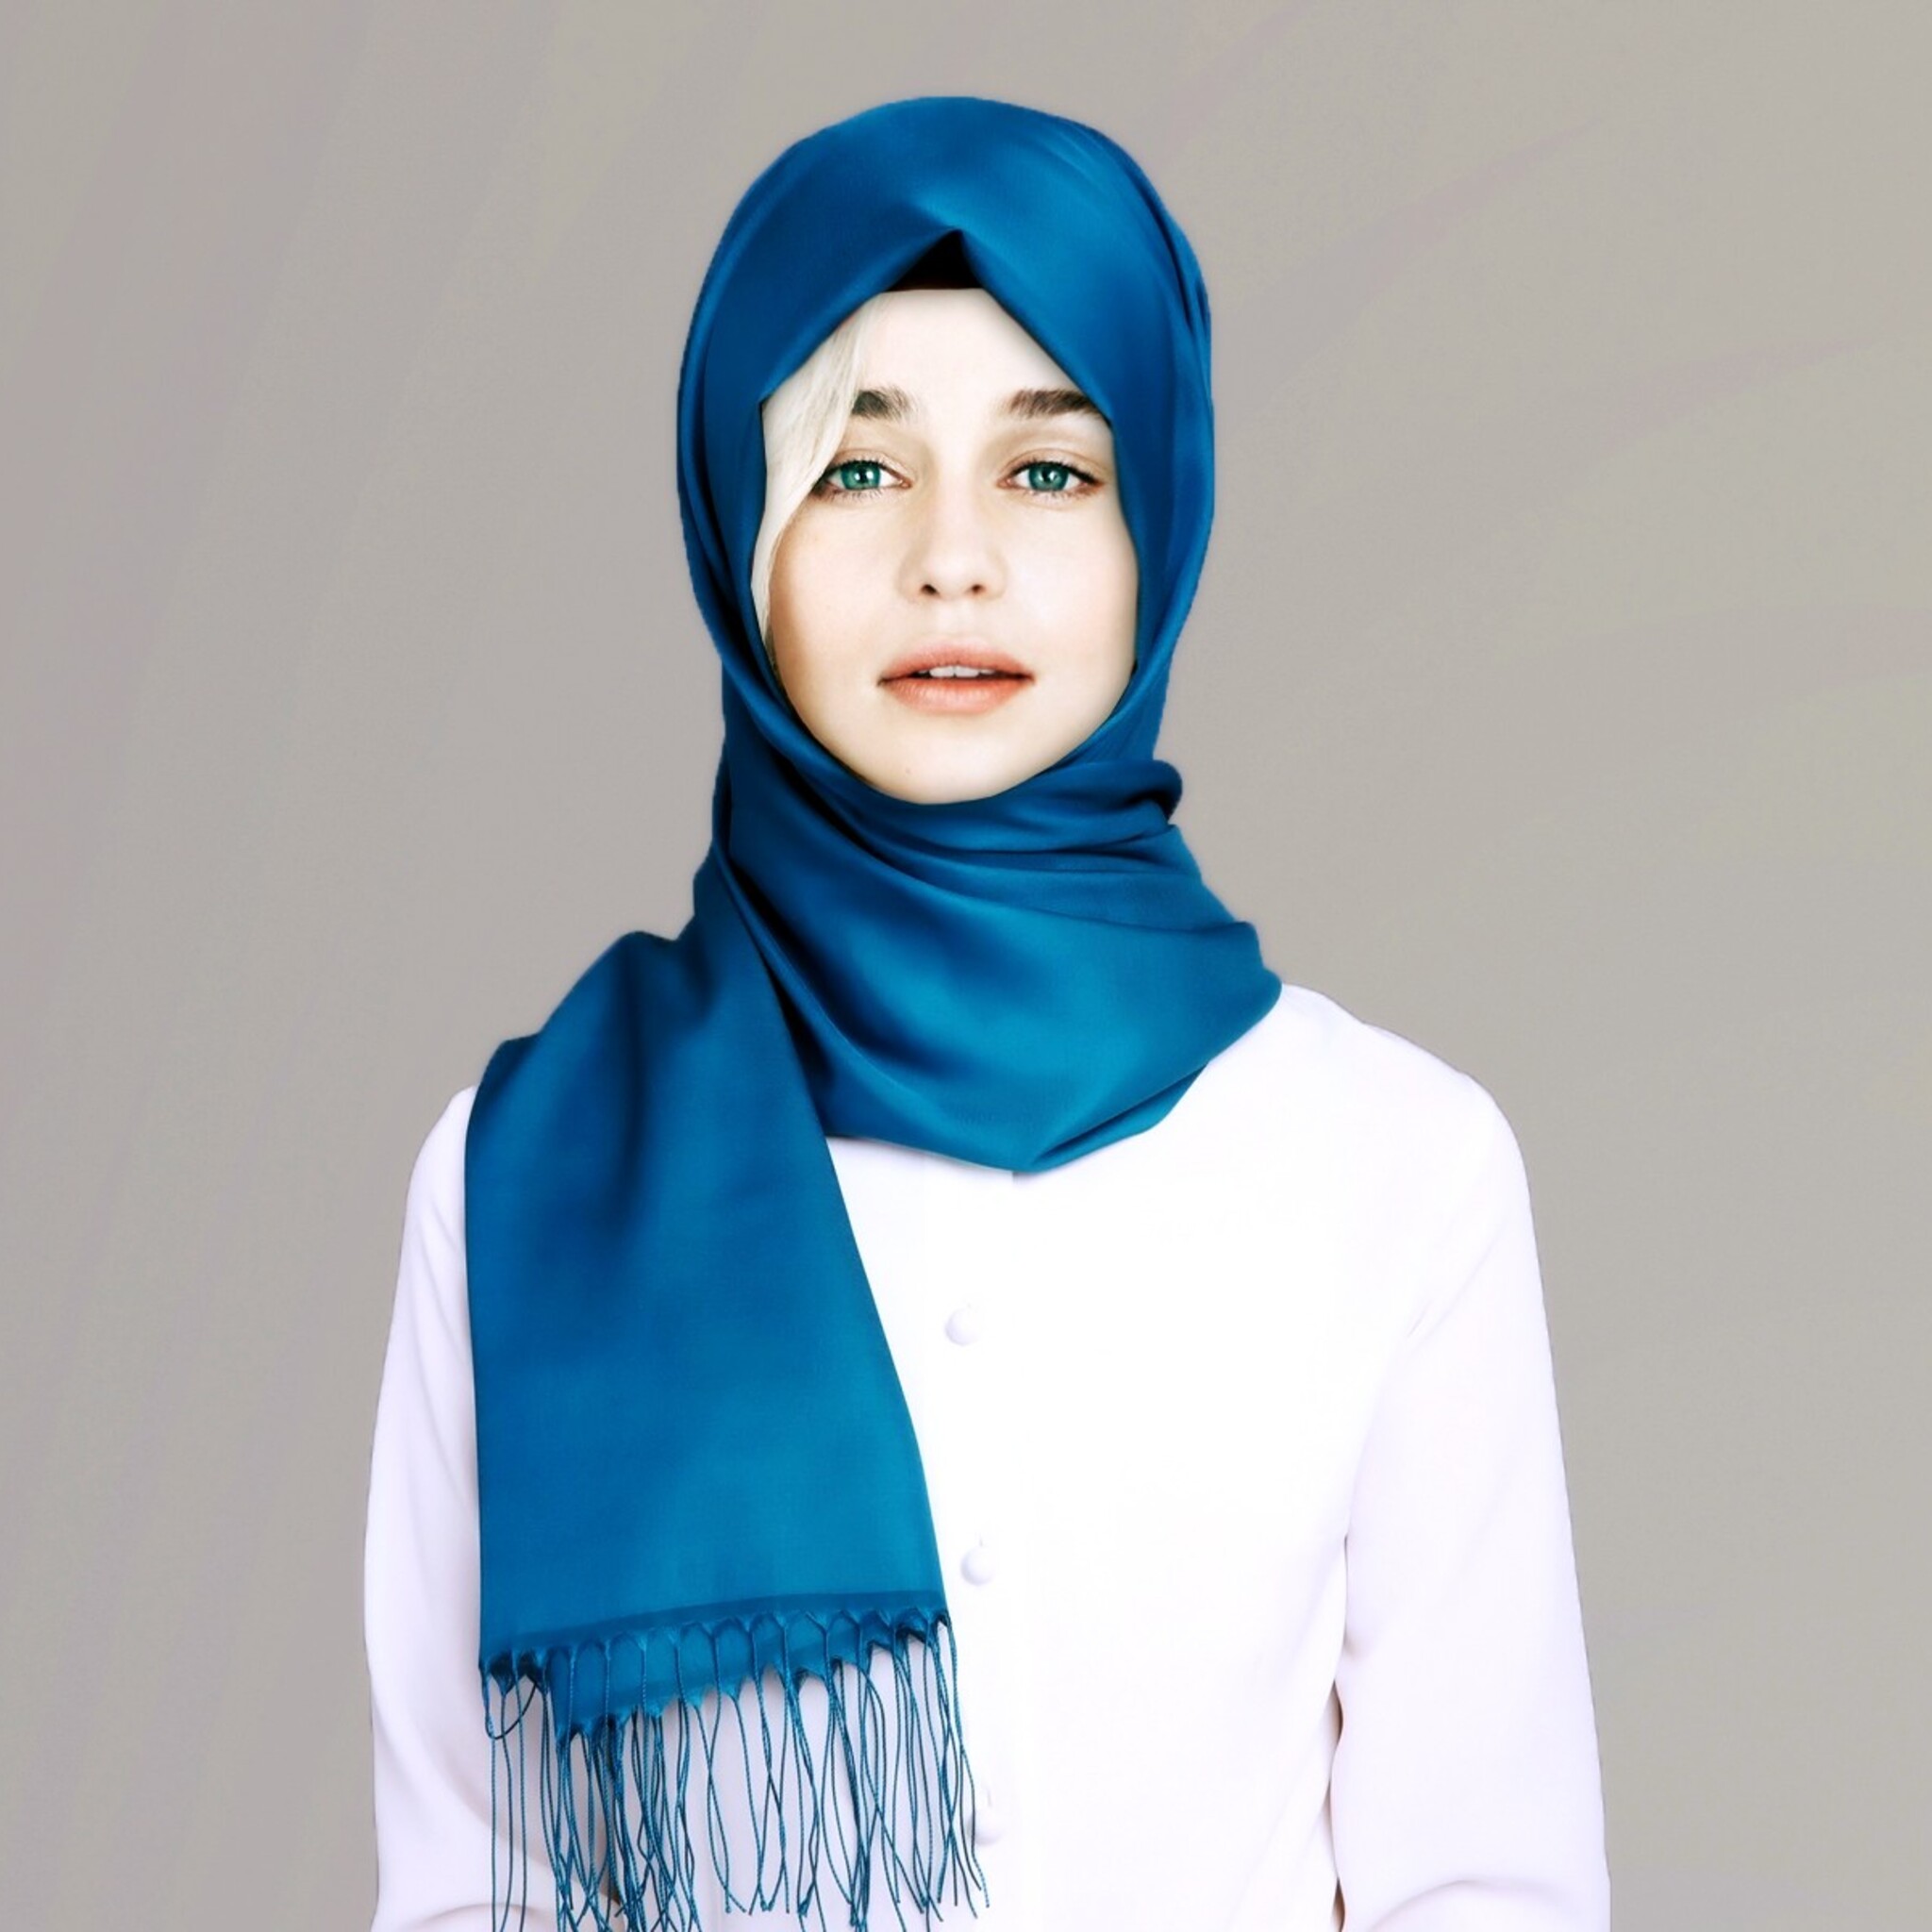 2048x2048 Emilia Clarke Hijab Ipad Air Hd 4k Wallpapers Images